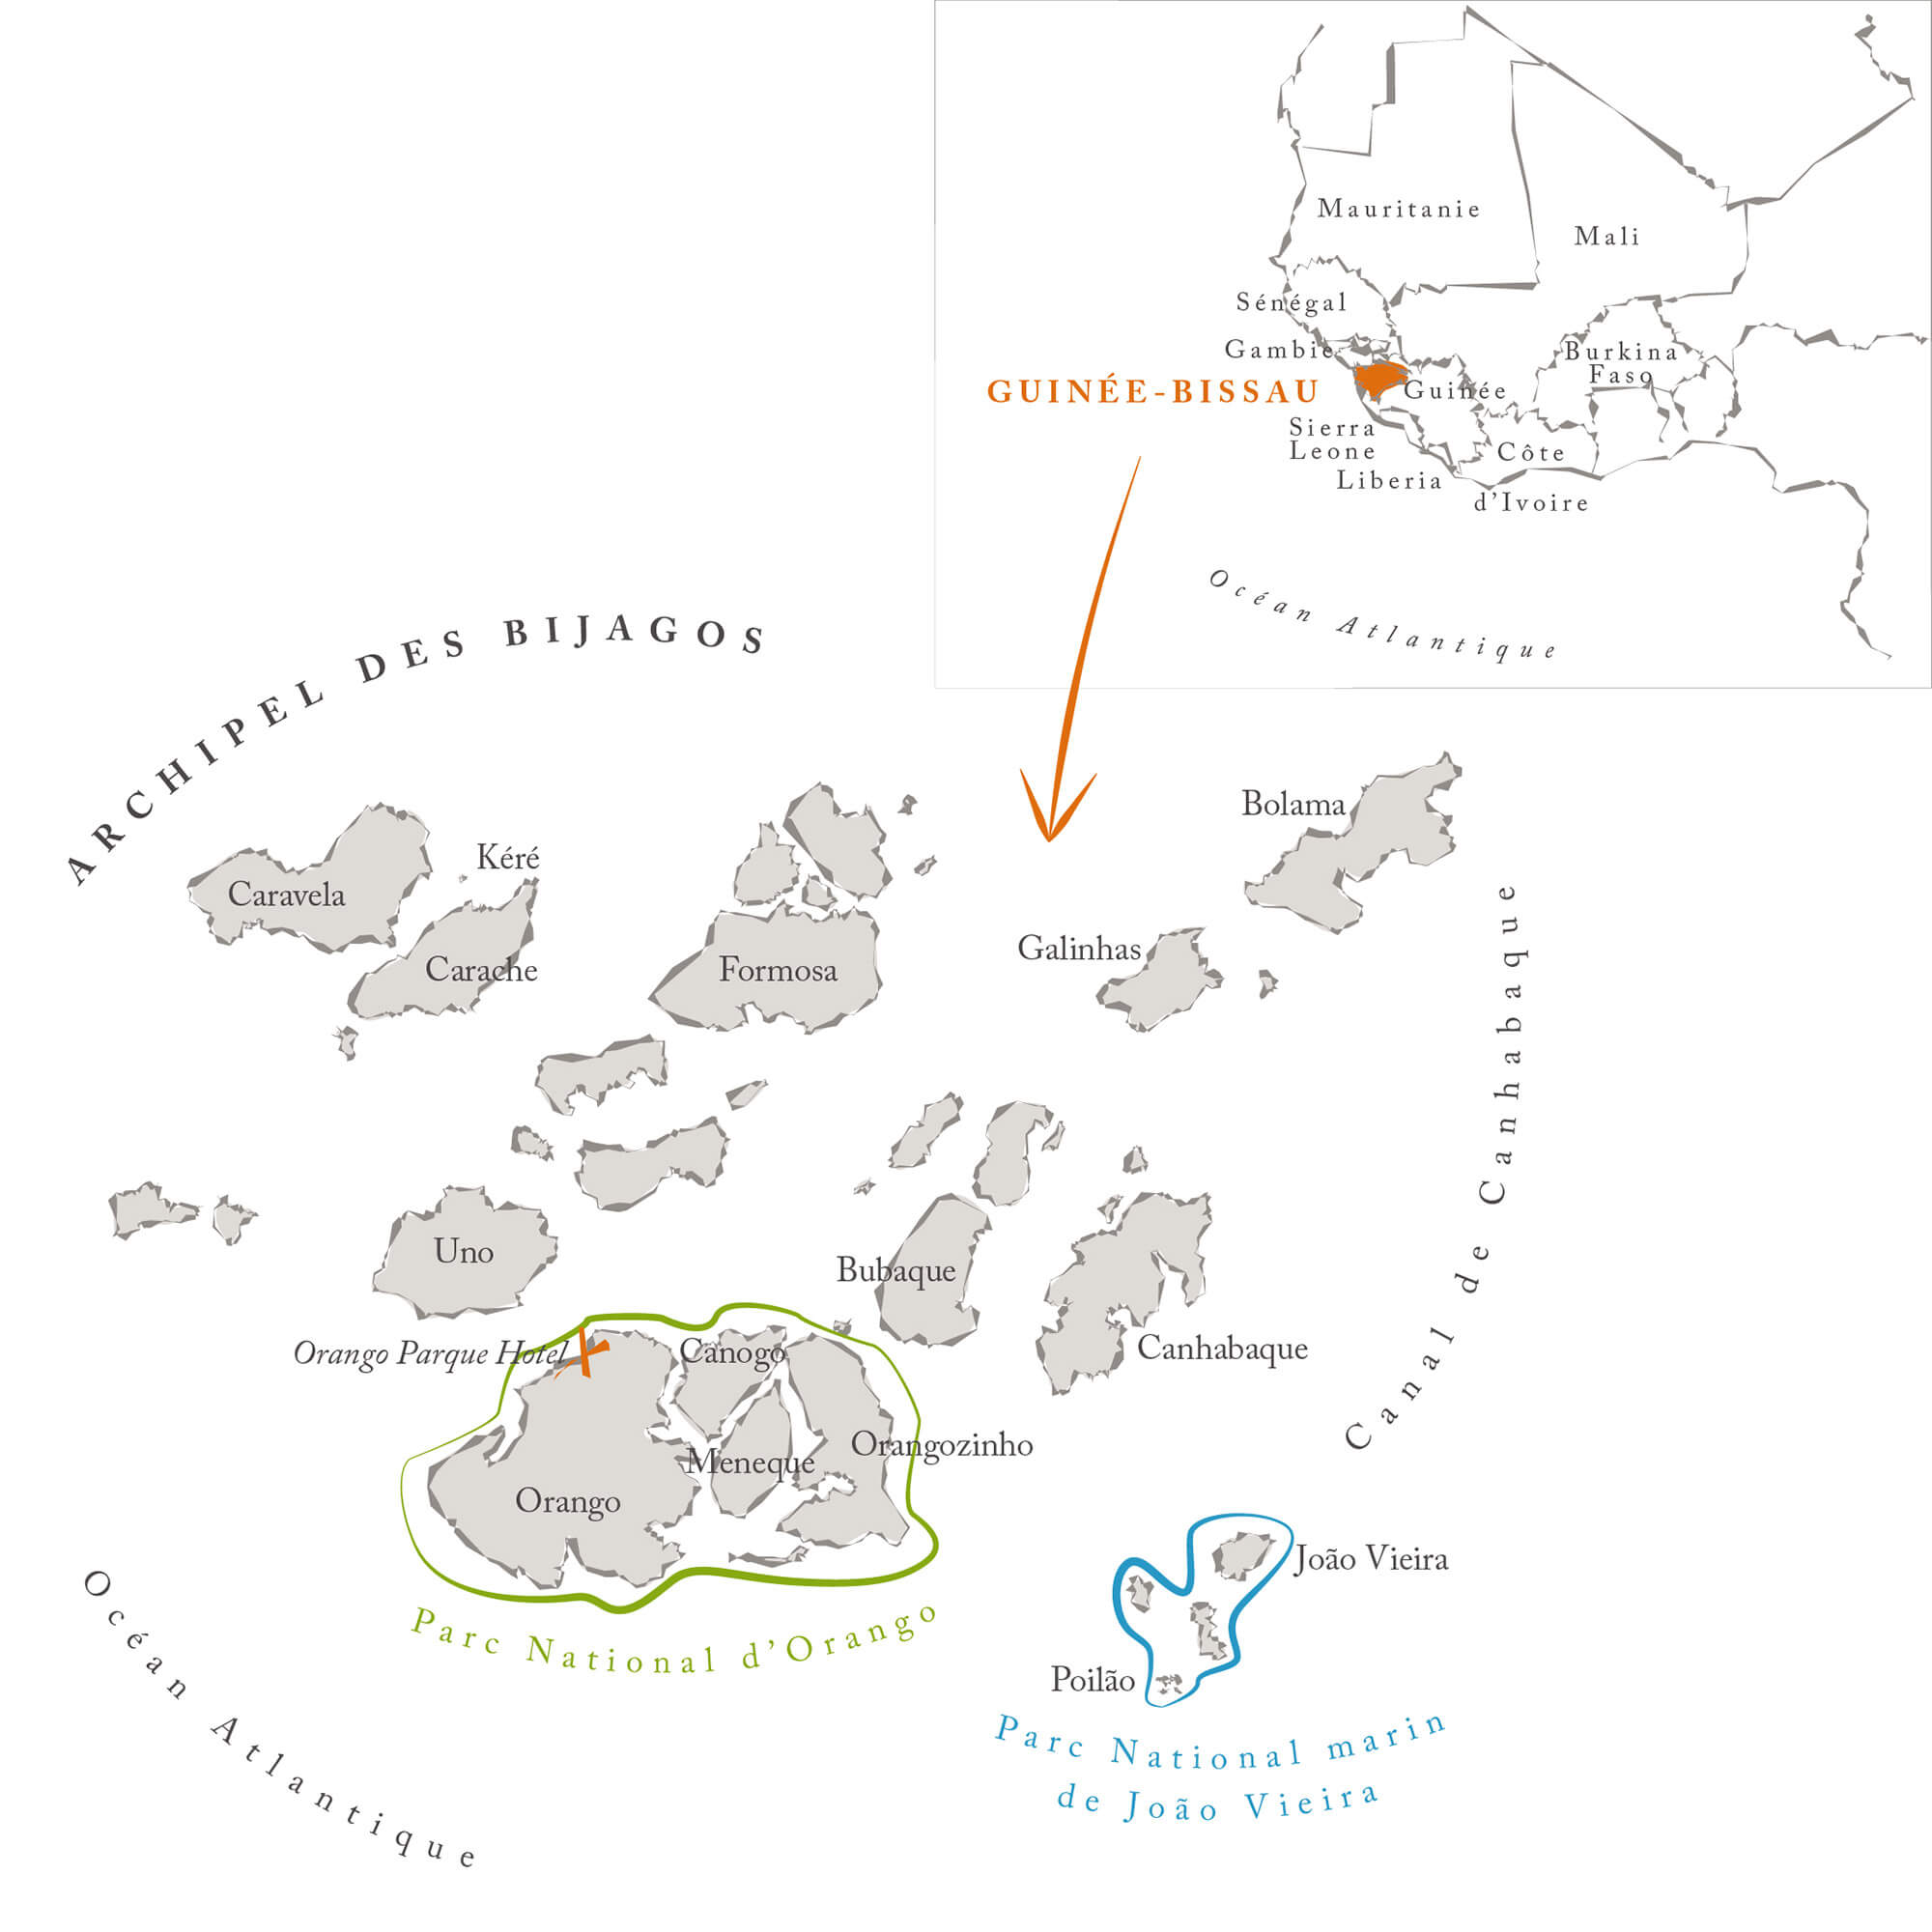 Cartographie - Création de cartes illustrées créatives - Ici une carte de l'archipel des Bijagos, Guinée-Bissau, Afrique, pour le magazine Roadbook © Kalao Studio